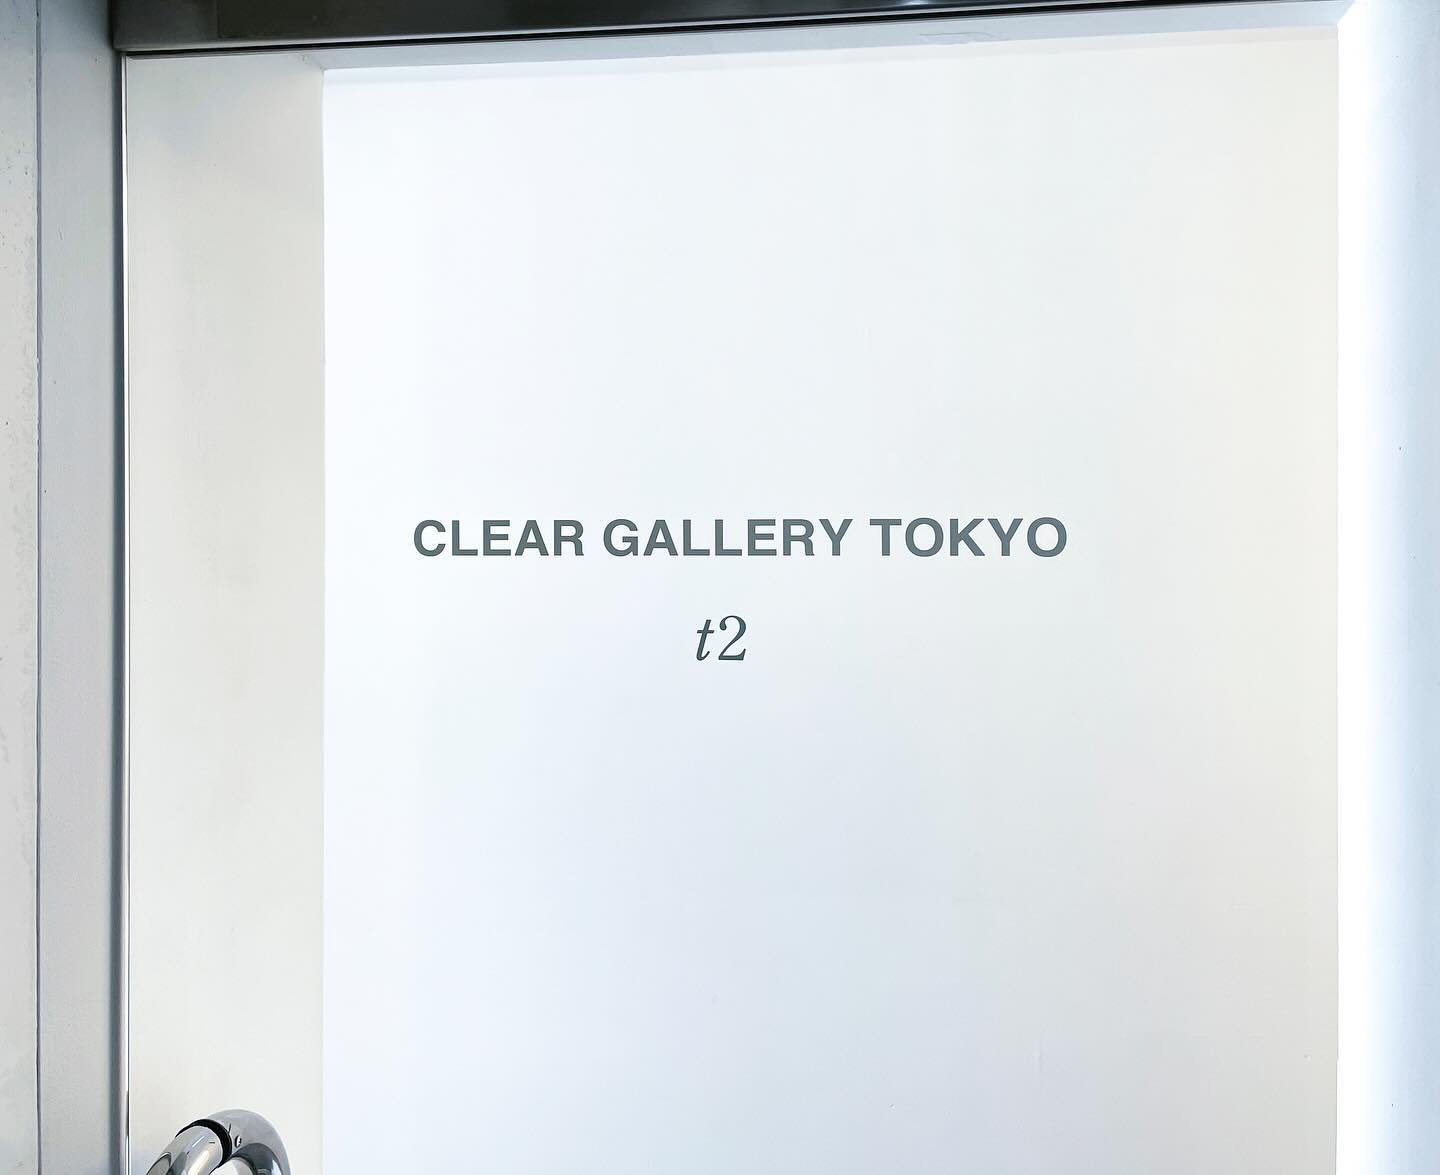 【お知らせ】
この度CLEAR GALLERY TOKYOは、アーティストの後方支援を基軸に先端技術を活用したアート事業を展開するt2(ティーツー)とパートナーシップを結び、六本木のギャラリースペースより芸術文化の発信をしてまいります。
今後はCLEAR GALLEY TOKYO企画の展覧会の他、t2による展示企画も開催していきますので、お近くにお越しの際はぜひお立ち寄りくださいませ。

CLEAR GALLERY TOKYO is pleased to announce a partnersh